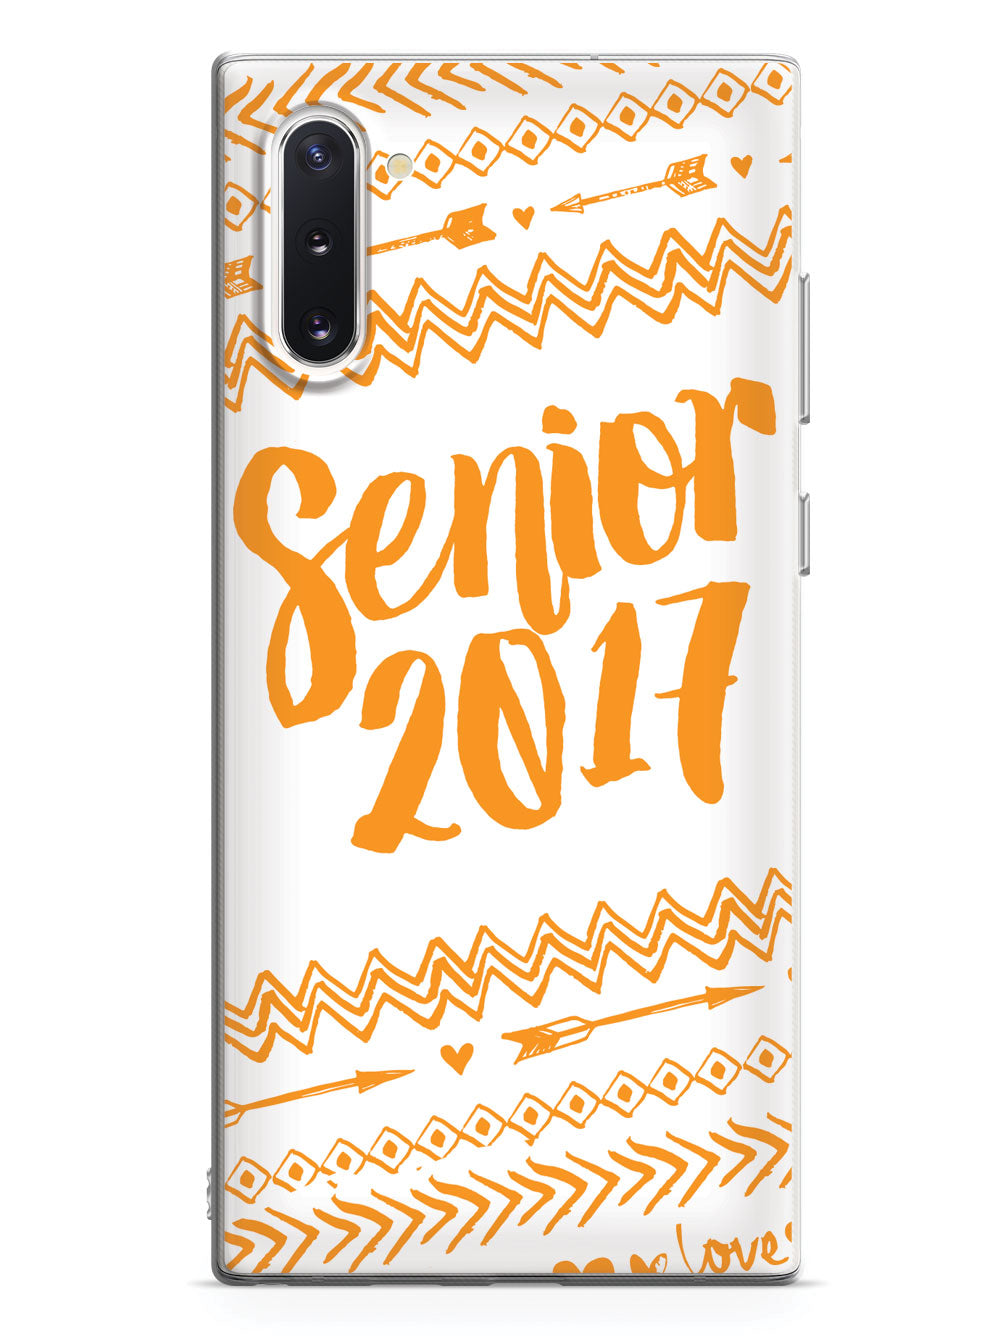 Senior 2017 - Orange Case